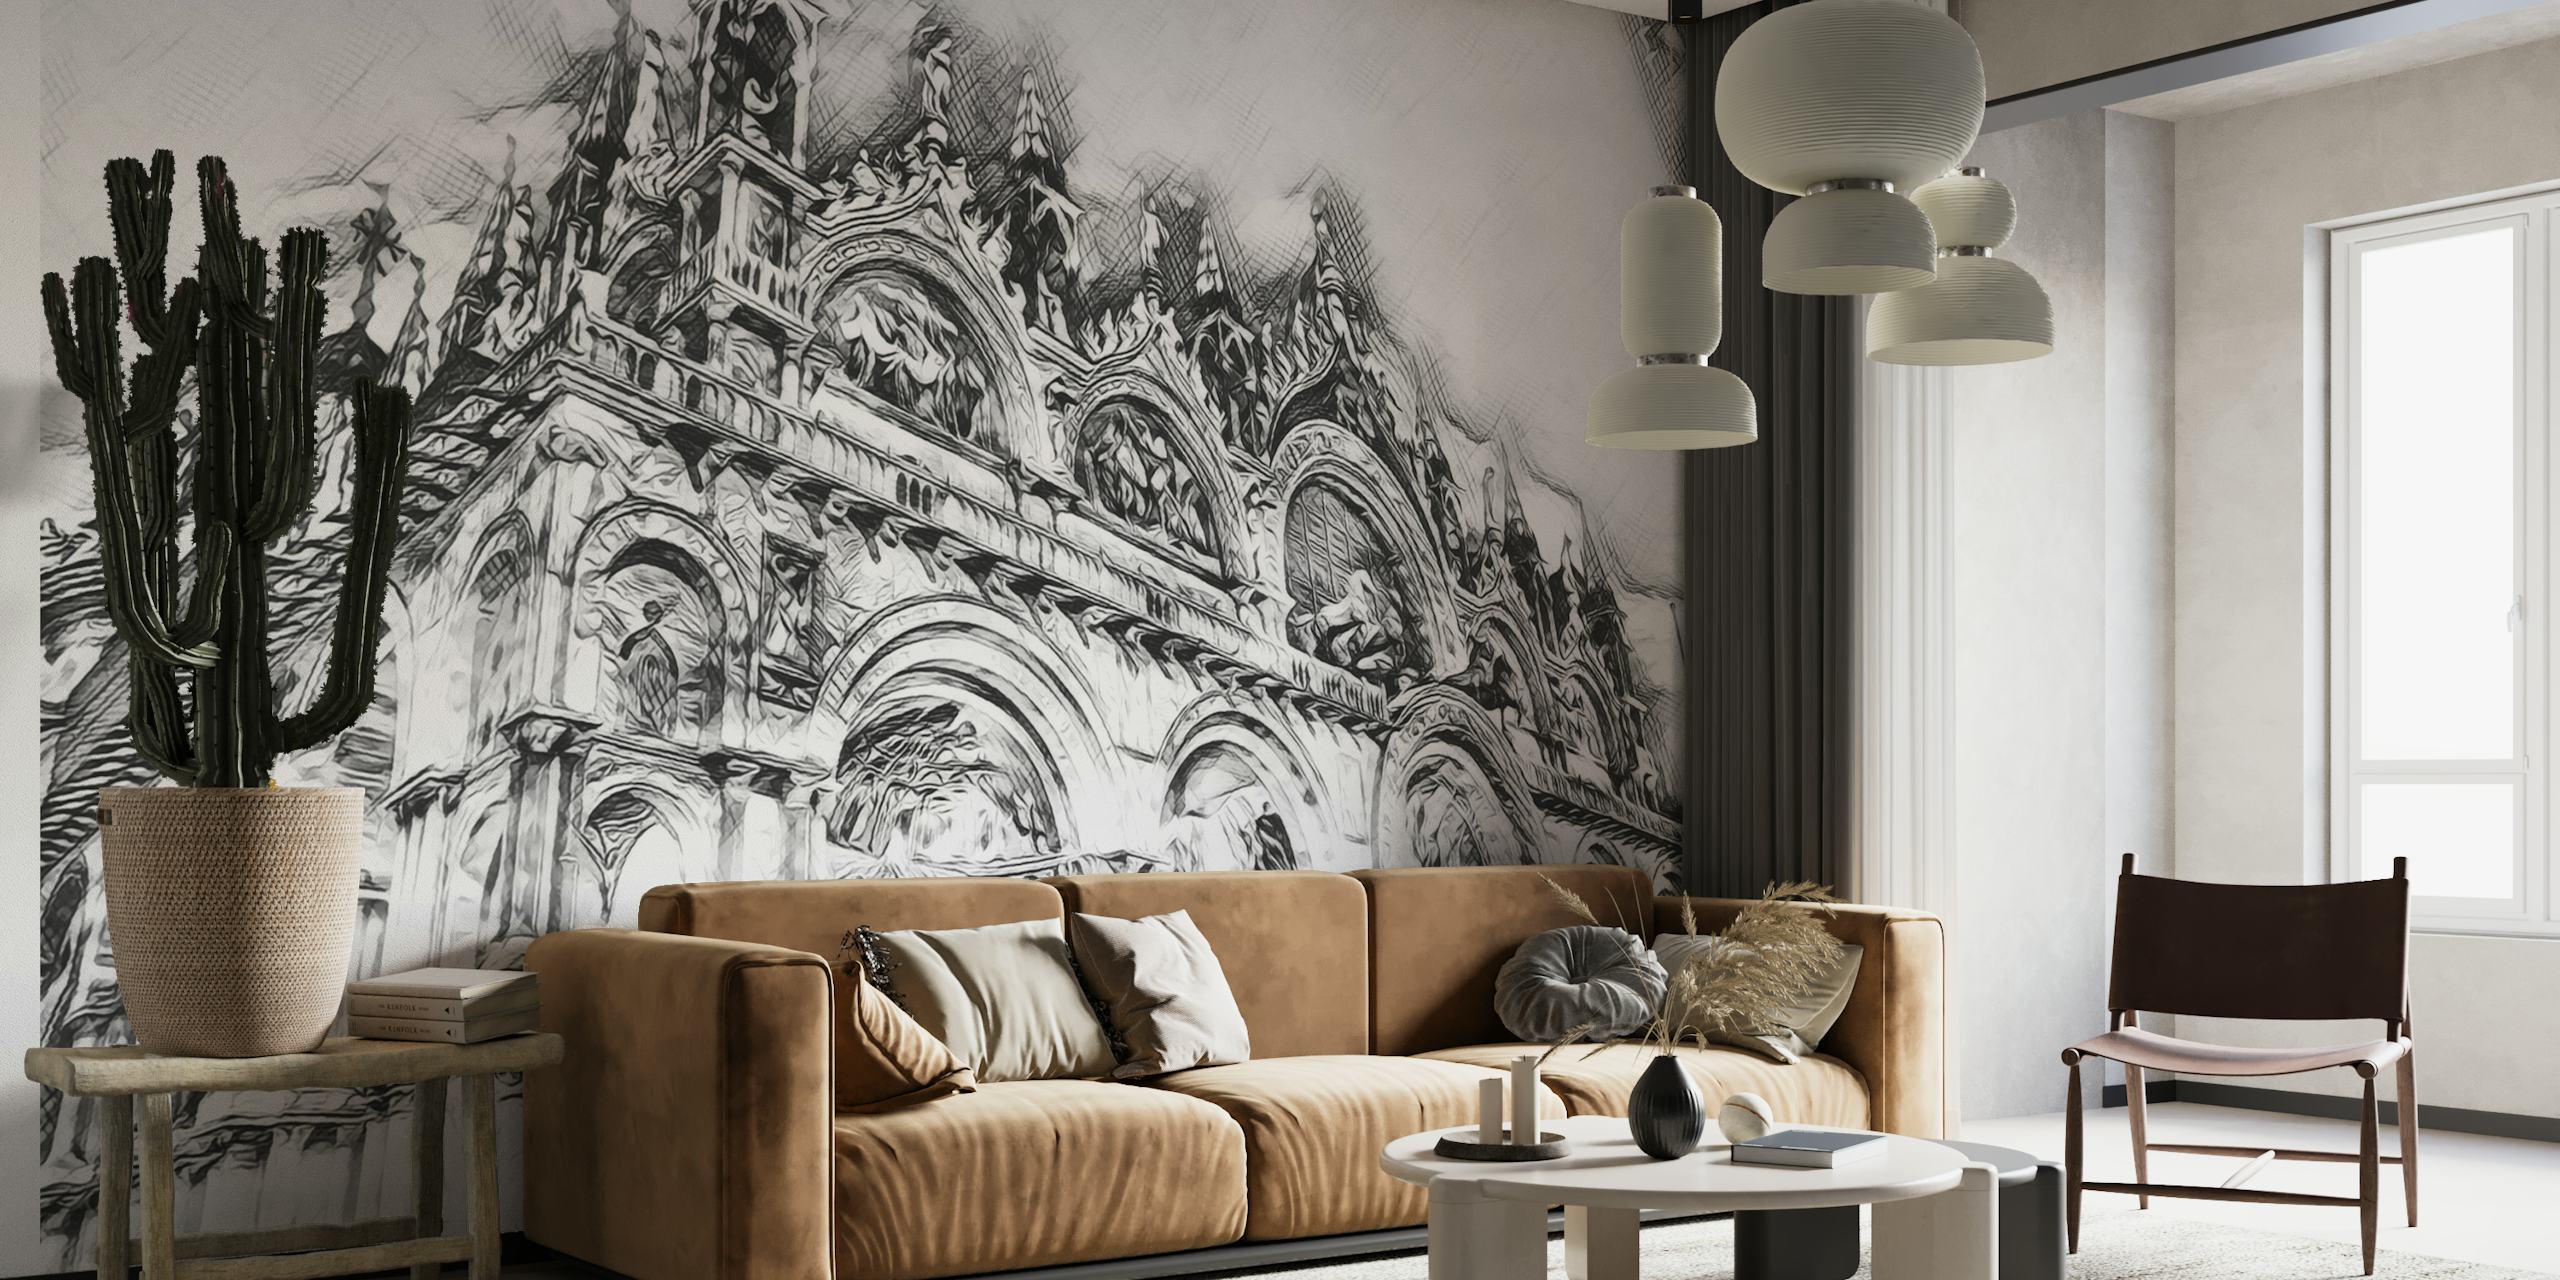 Crno-bijeli zidni mural venecijanske katedrale sa složenim detaljima